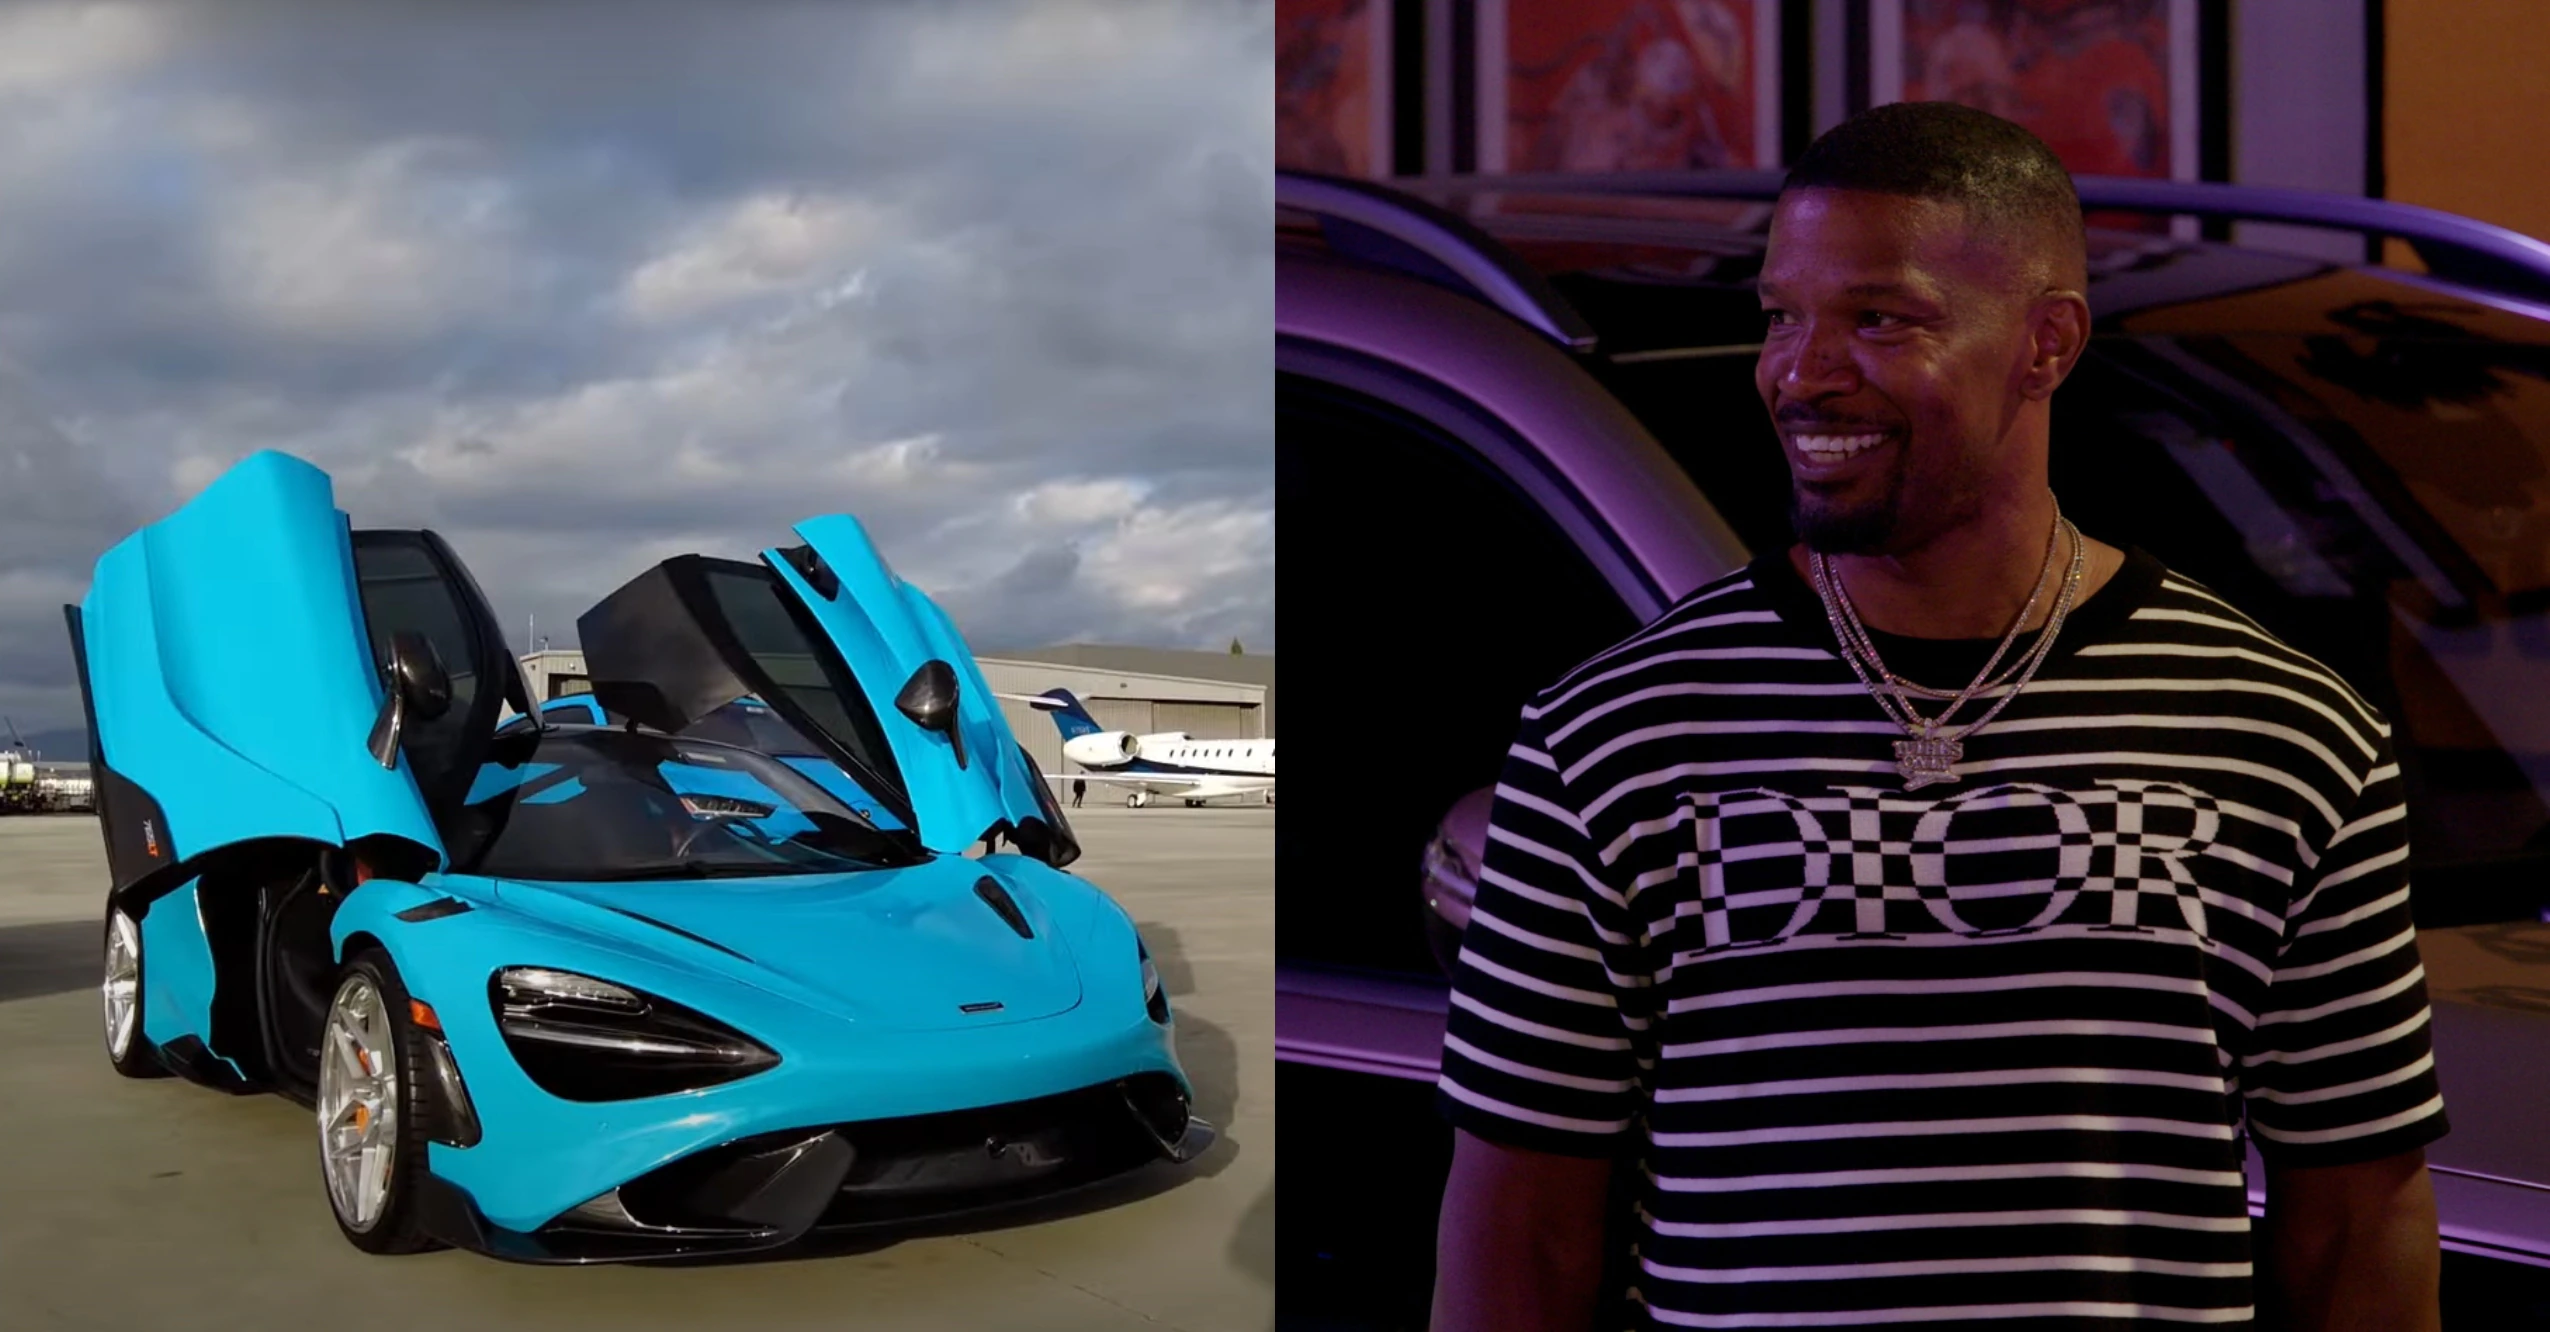 Watch Jamie Foxx Visit Celebrity Supercar Dealerships in ‘Million Dollar Wheels’ Trailer